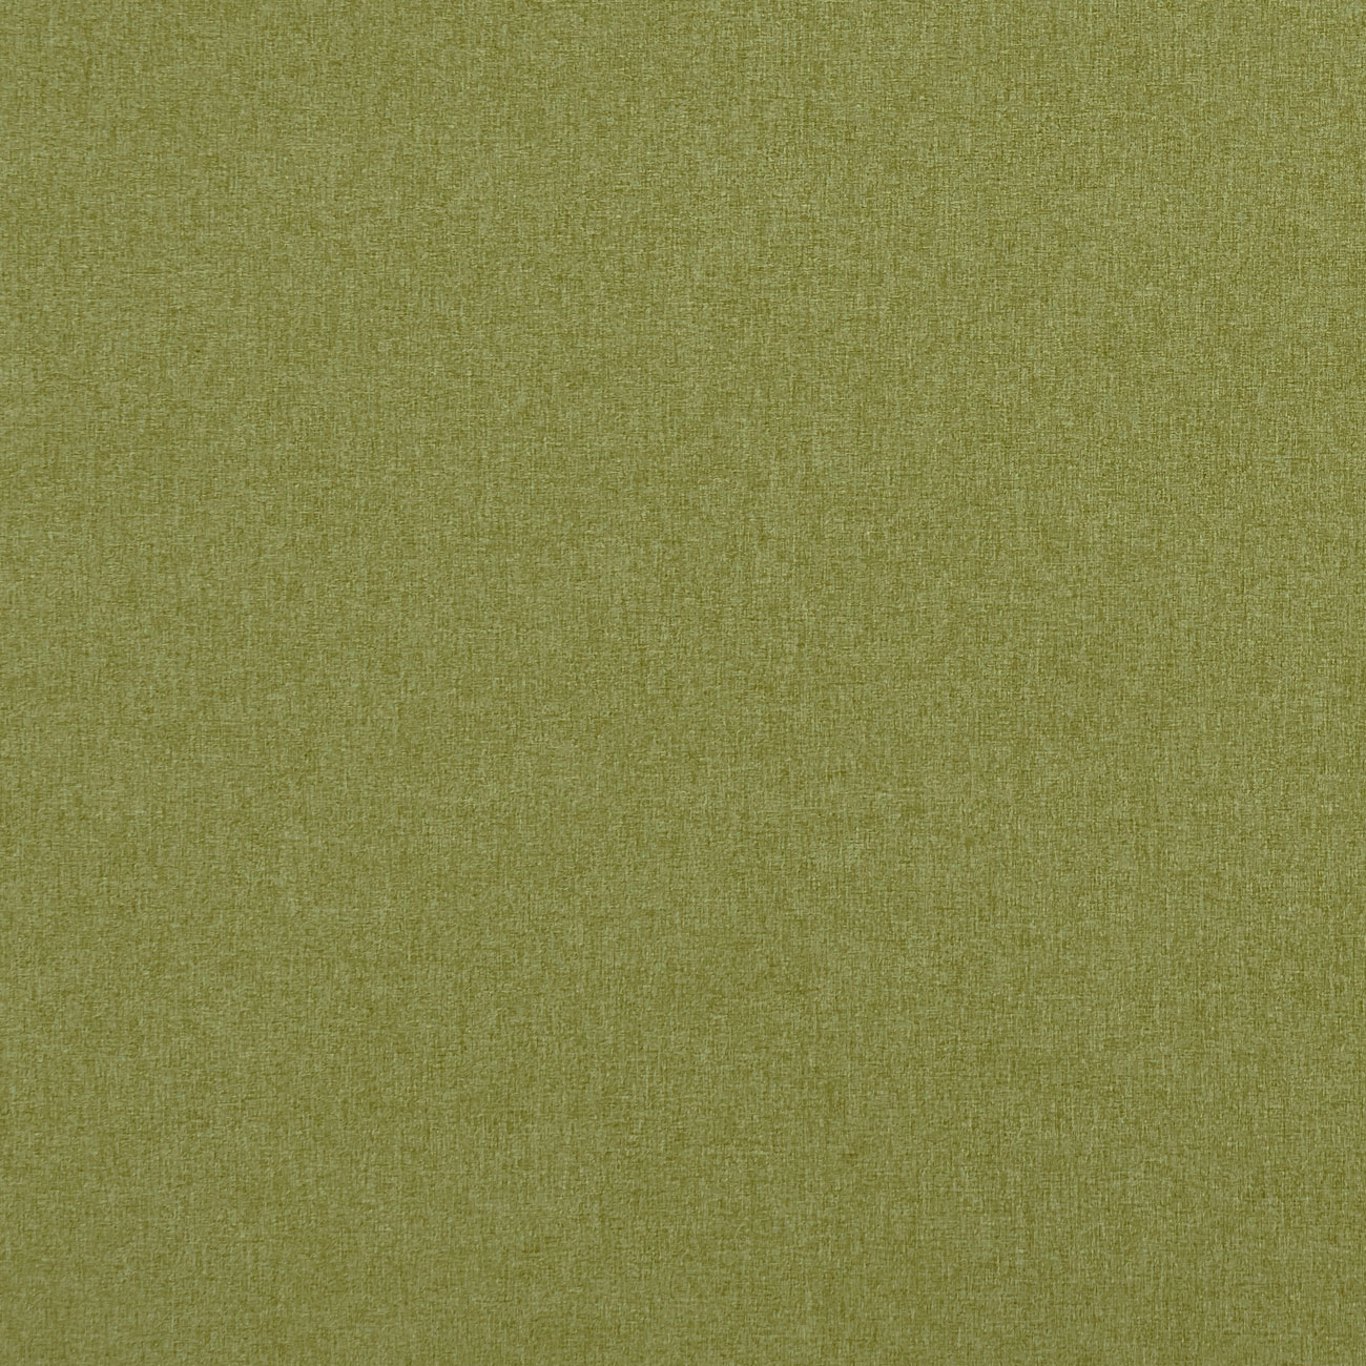 Highlander Leaf Fabric by CNC